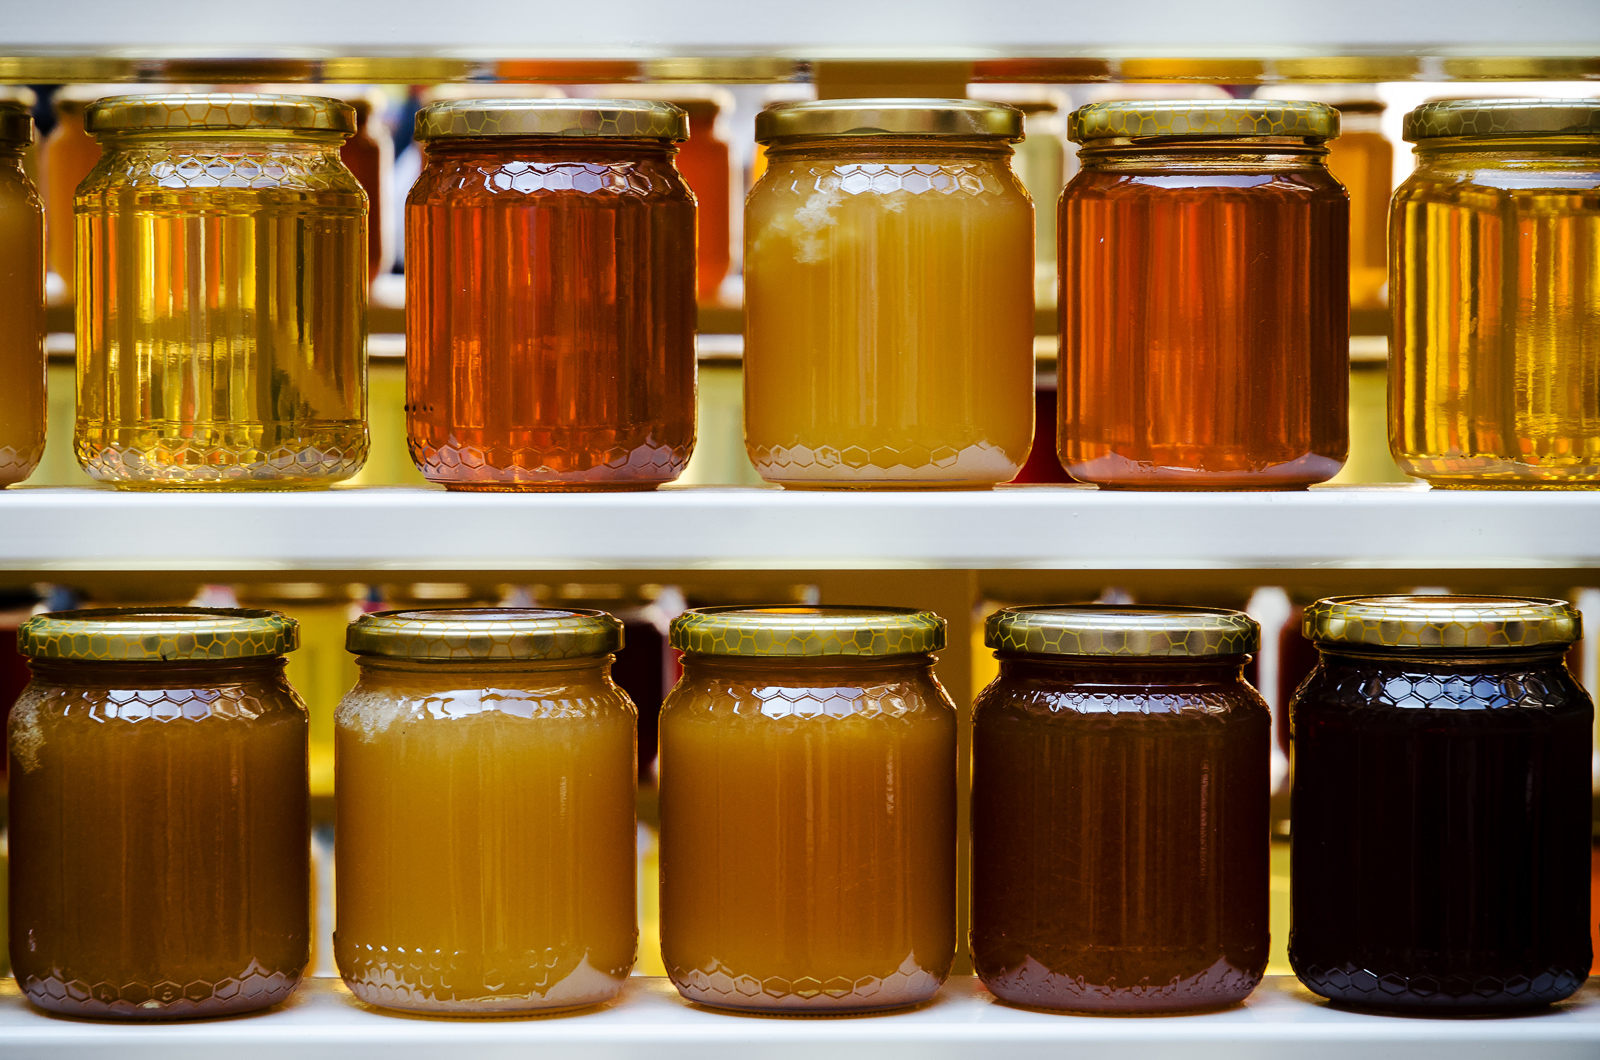 Jars of honey and jam on shelves